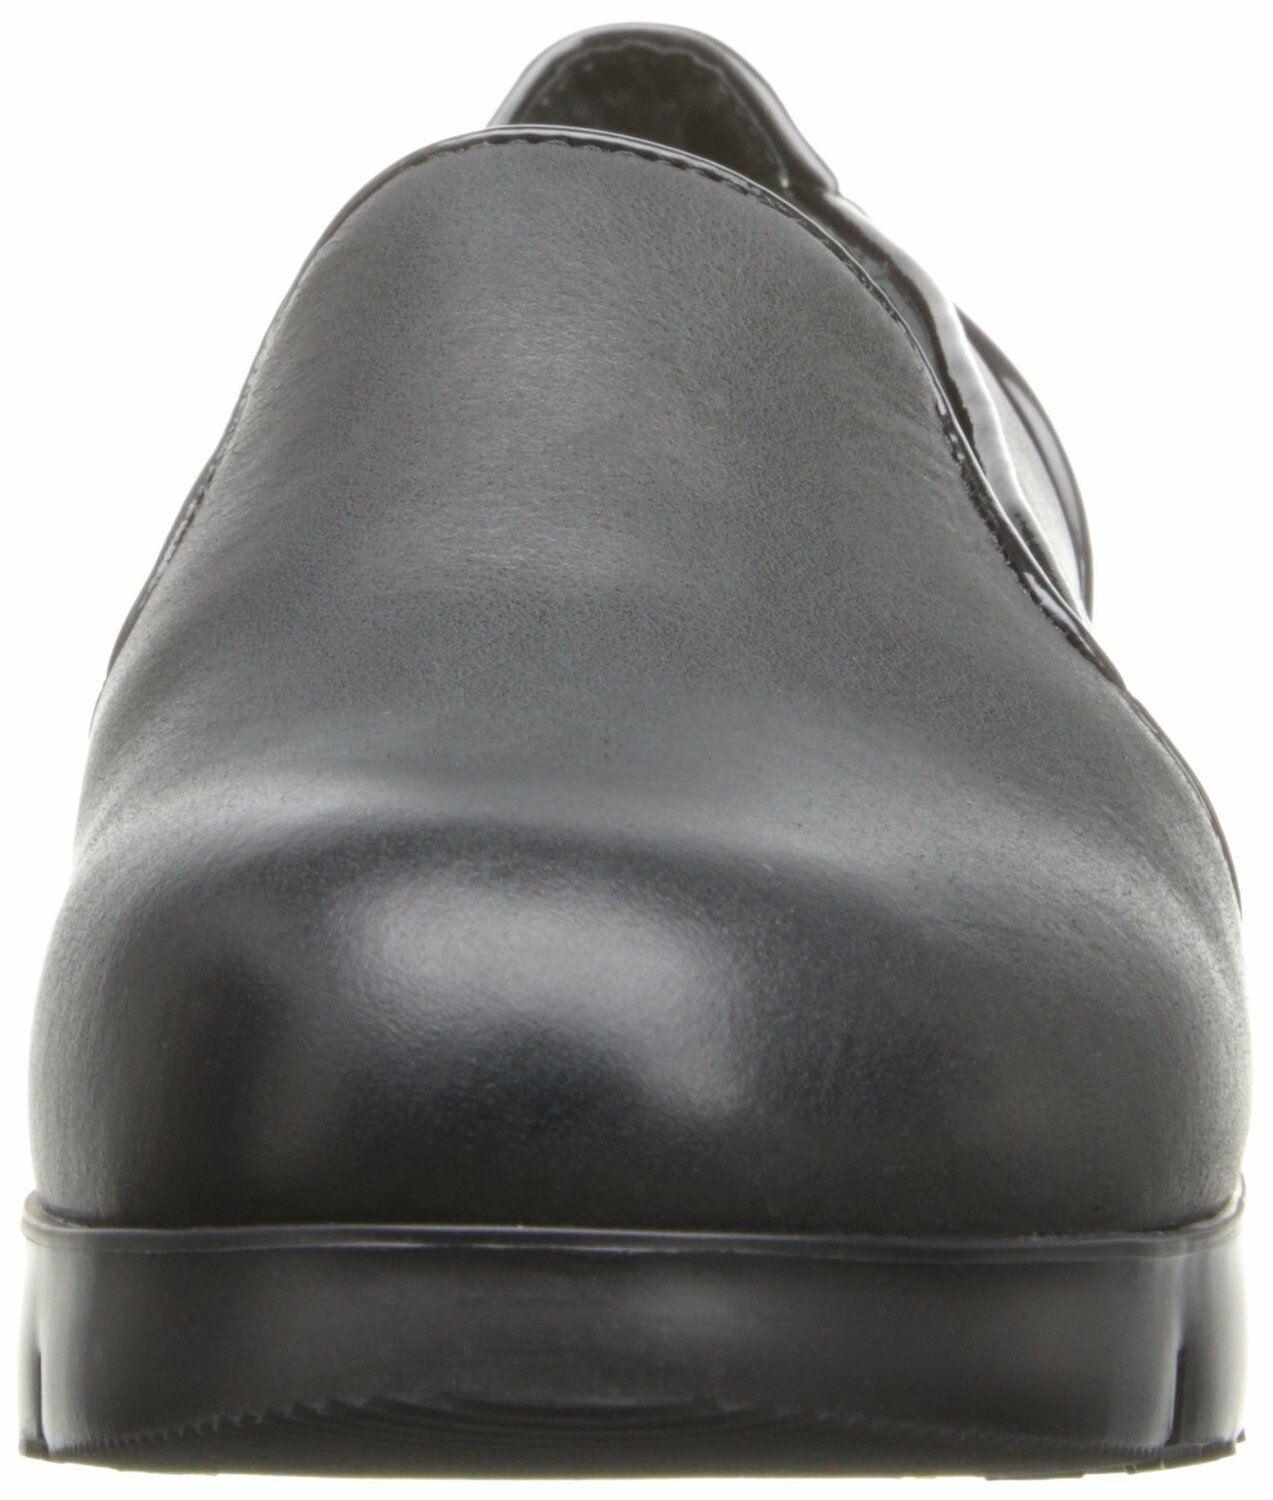 TSUBO Ebonee Slip-on Loafer Black Leather Comfort Shoes Size US 9.5 - SVNYFancy